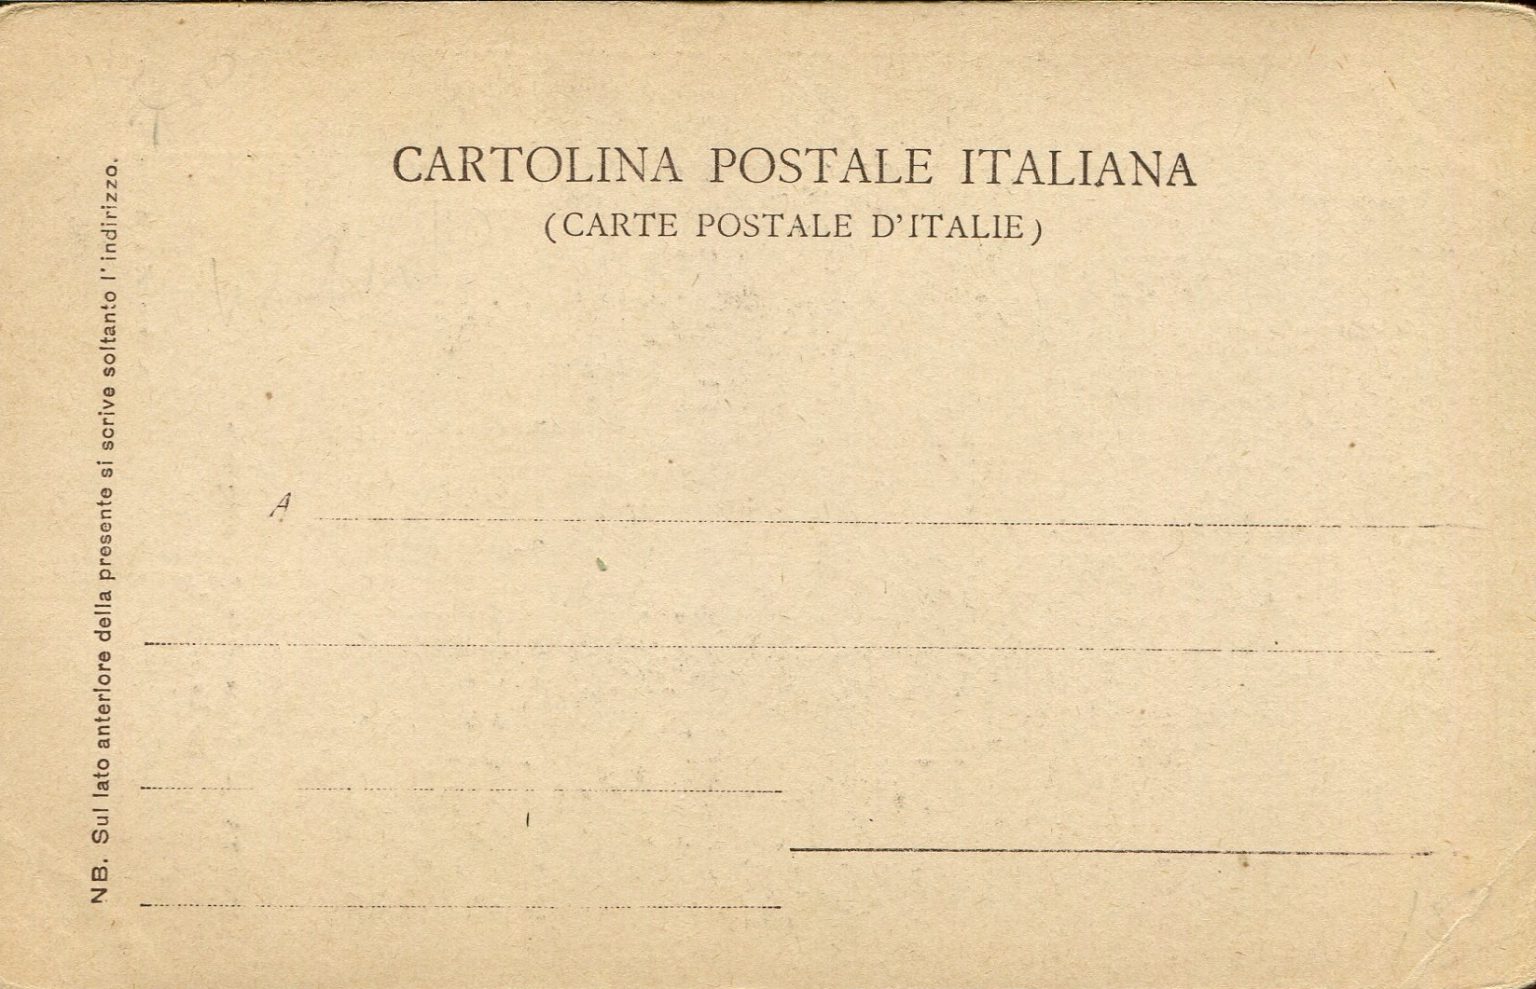 cartolina | Postcard History